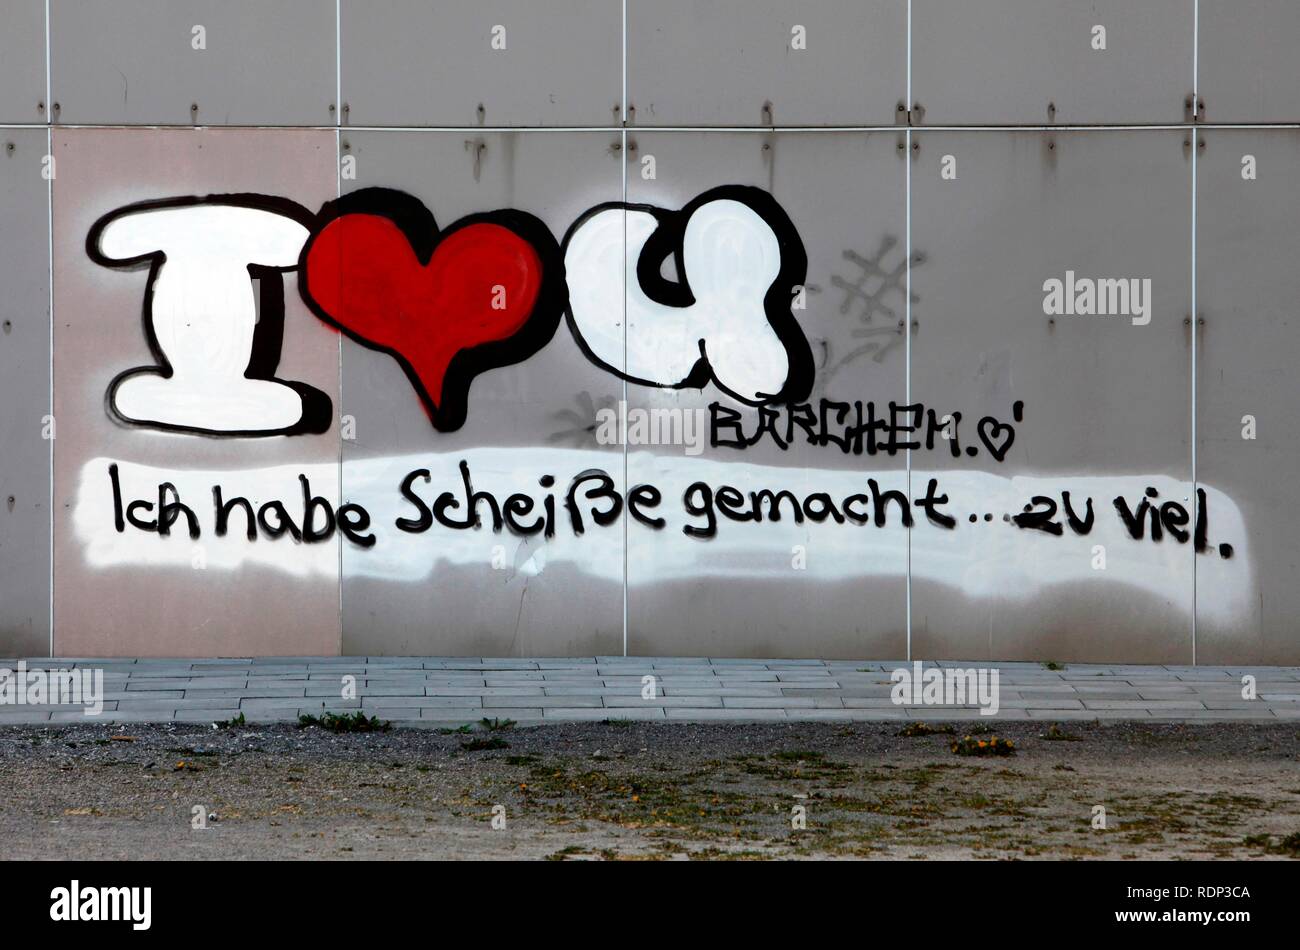 Graffiti sur un bâtiment, des excuses par écrit en allemand pour une erreur dans un rapport d'amour Banque D'Images